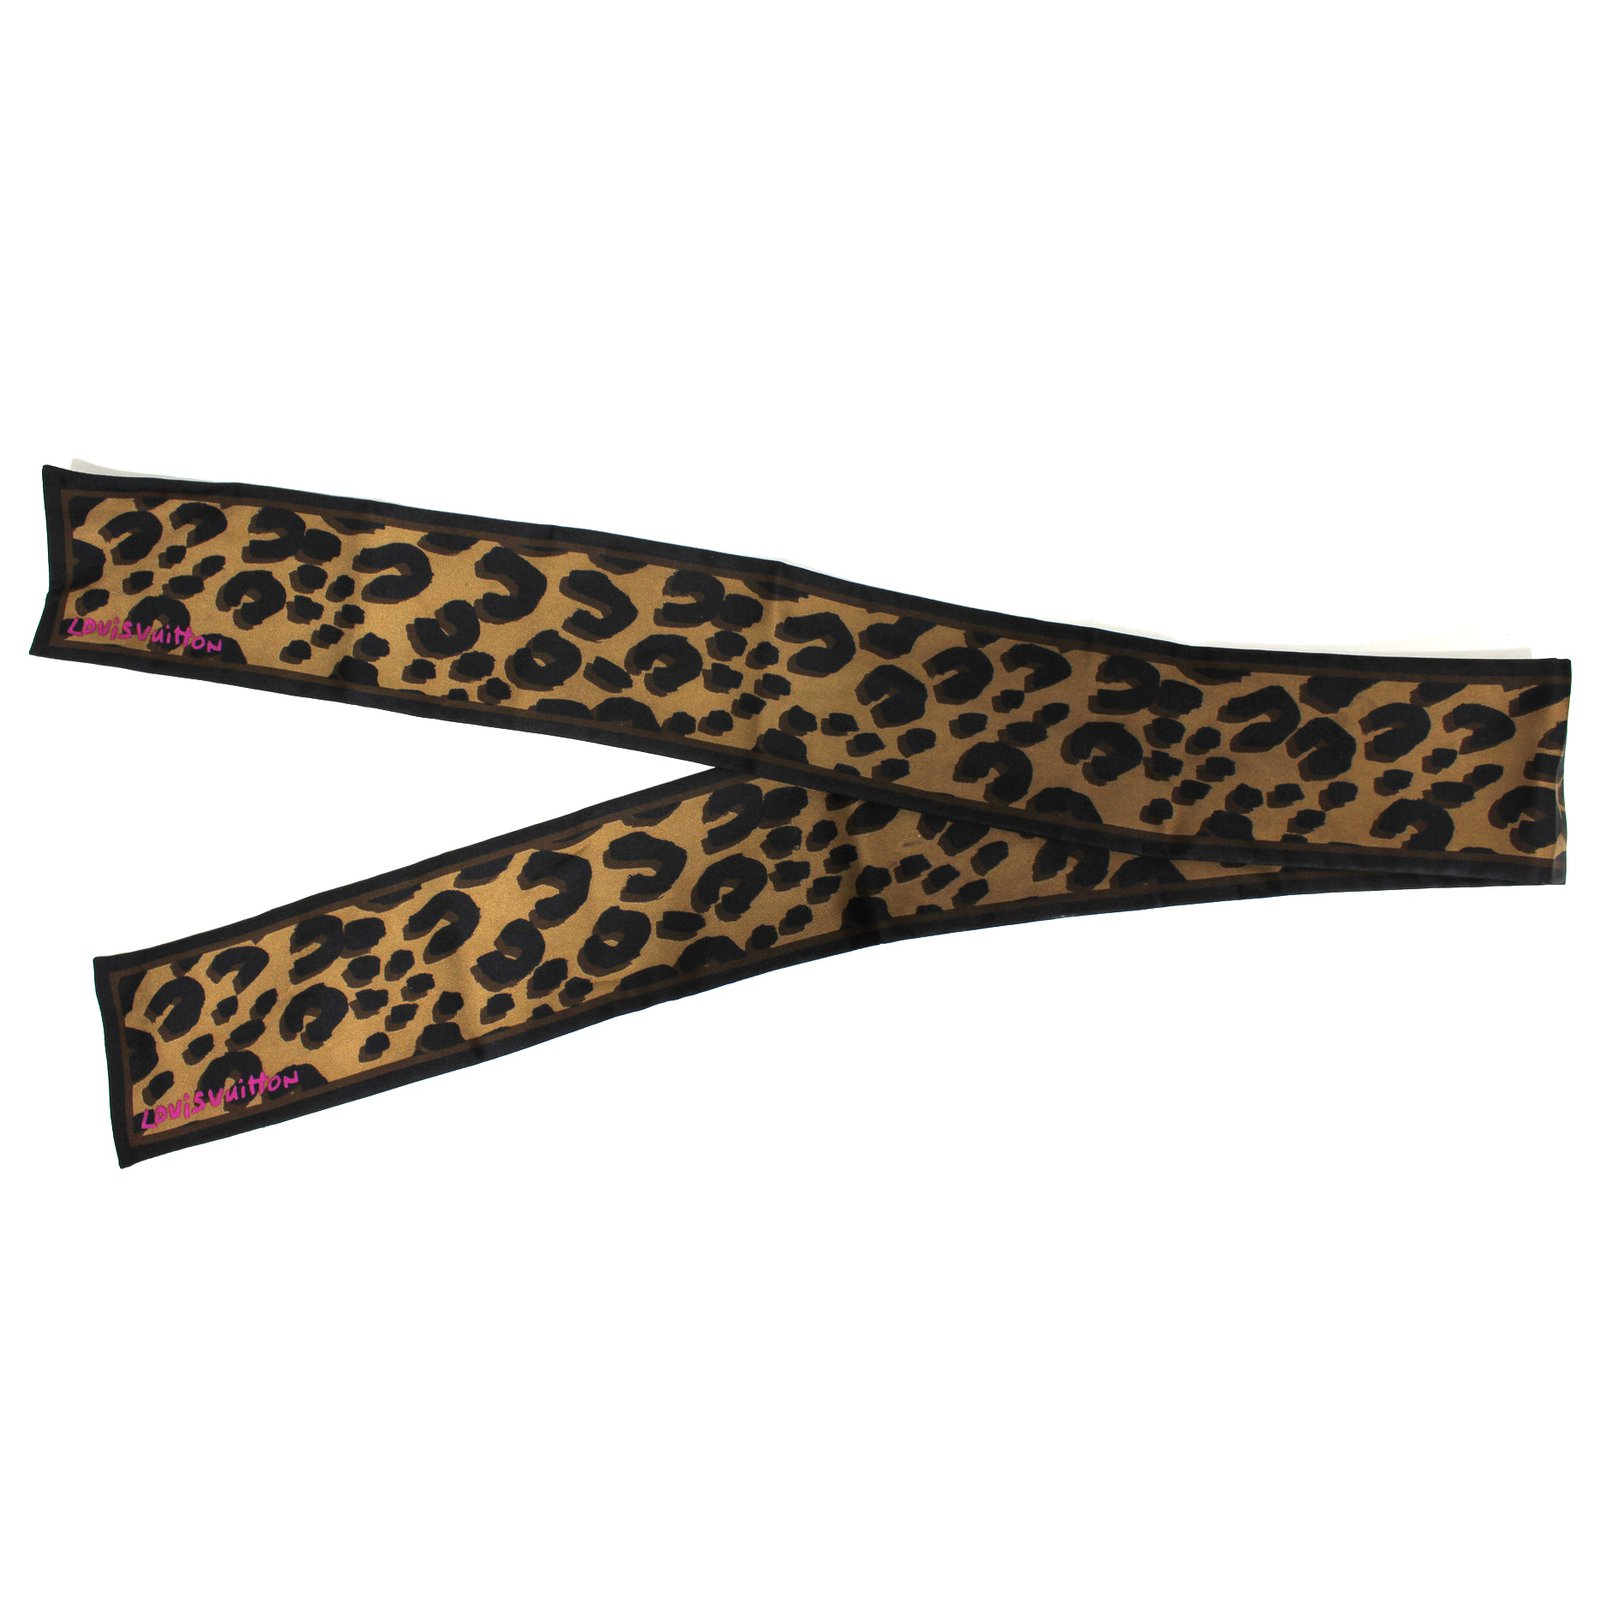 Leopard Print Louis Vuitton Scarf